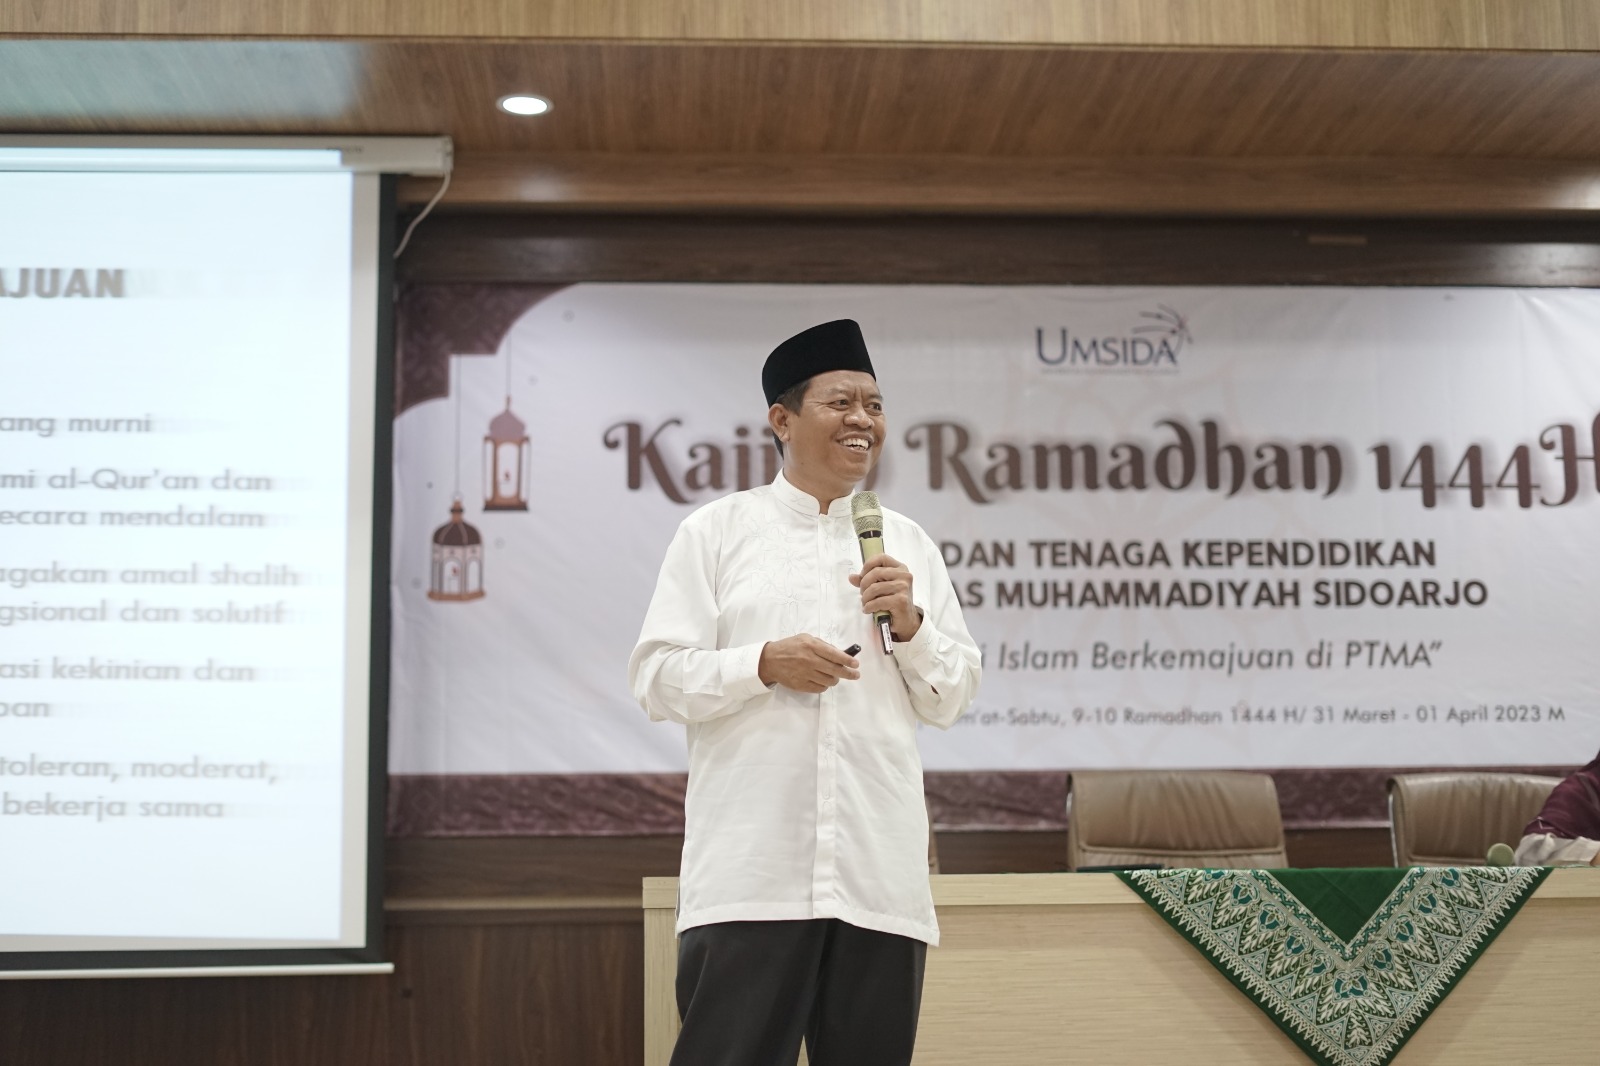 Islam Berkemajuan Motto Muhammadiyah, Ini Buktinya